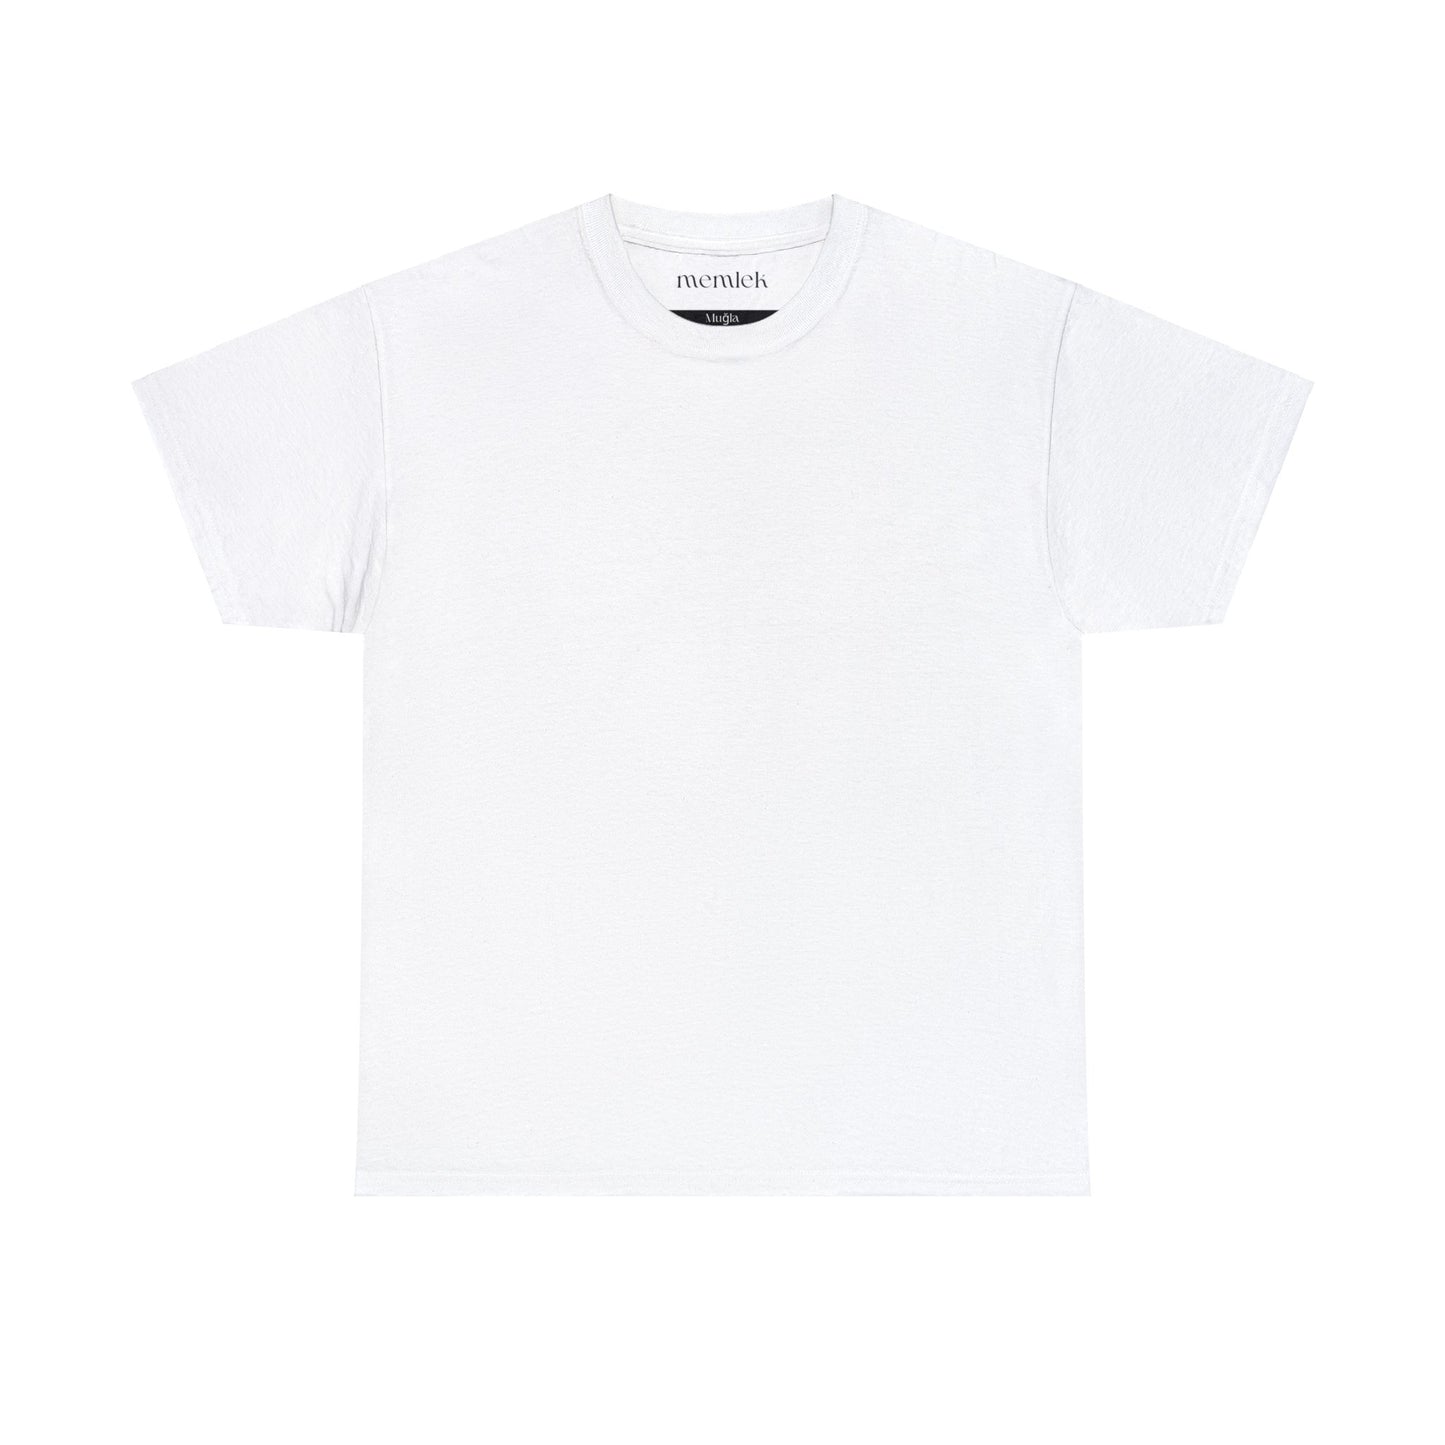 Siyah Lale - 48 Muğla - T-Shirt - Back Print - Black/White